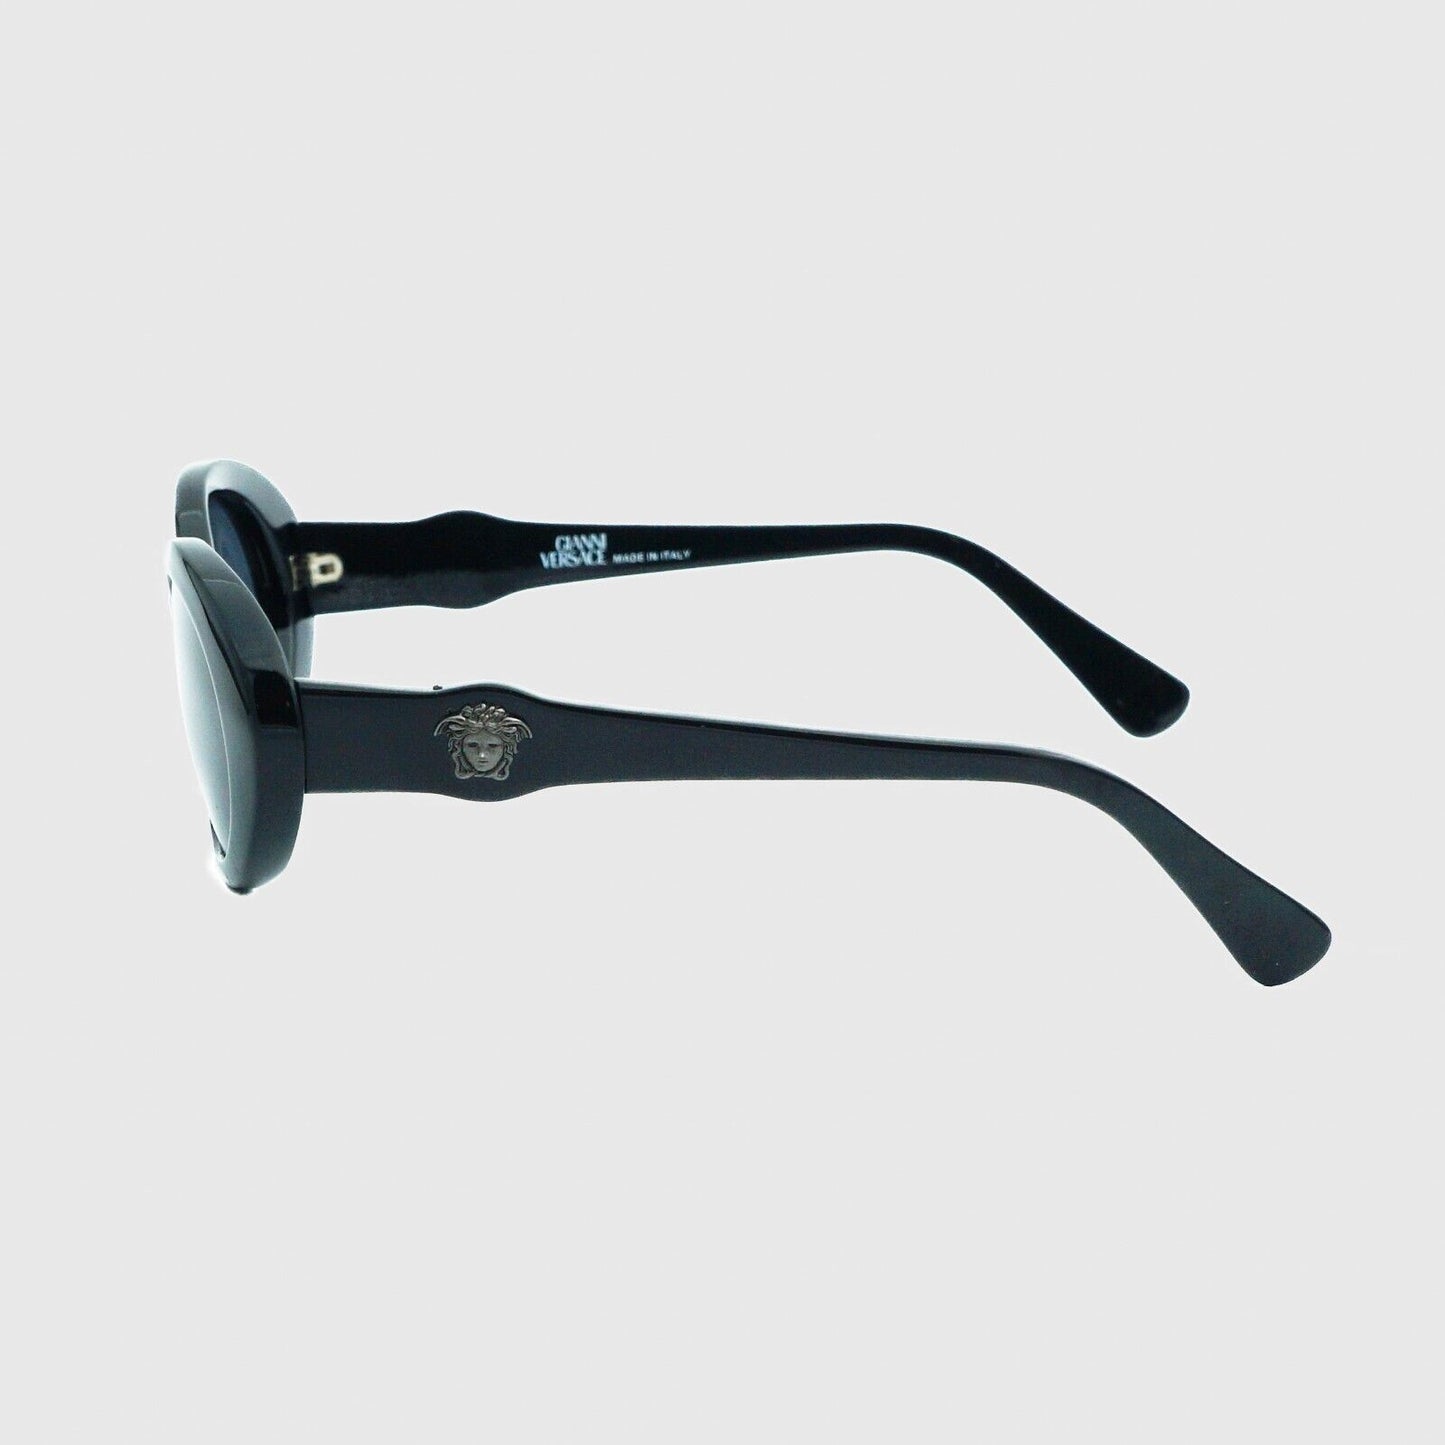 GIANNI VERSACE 342 Medusa Black Oval Sunglasses Vintage 90s